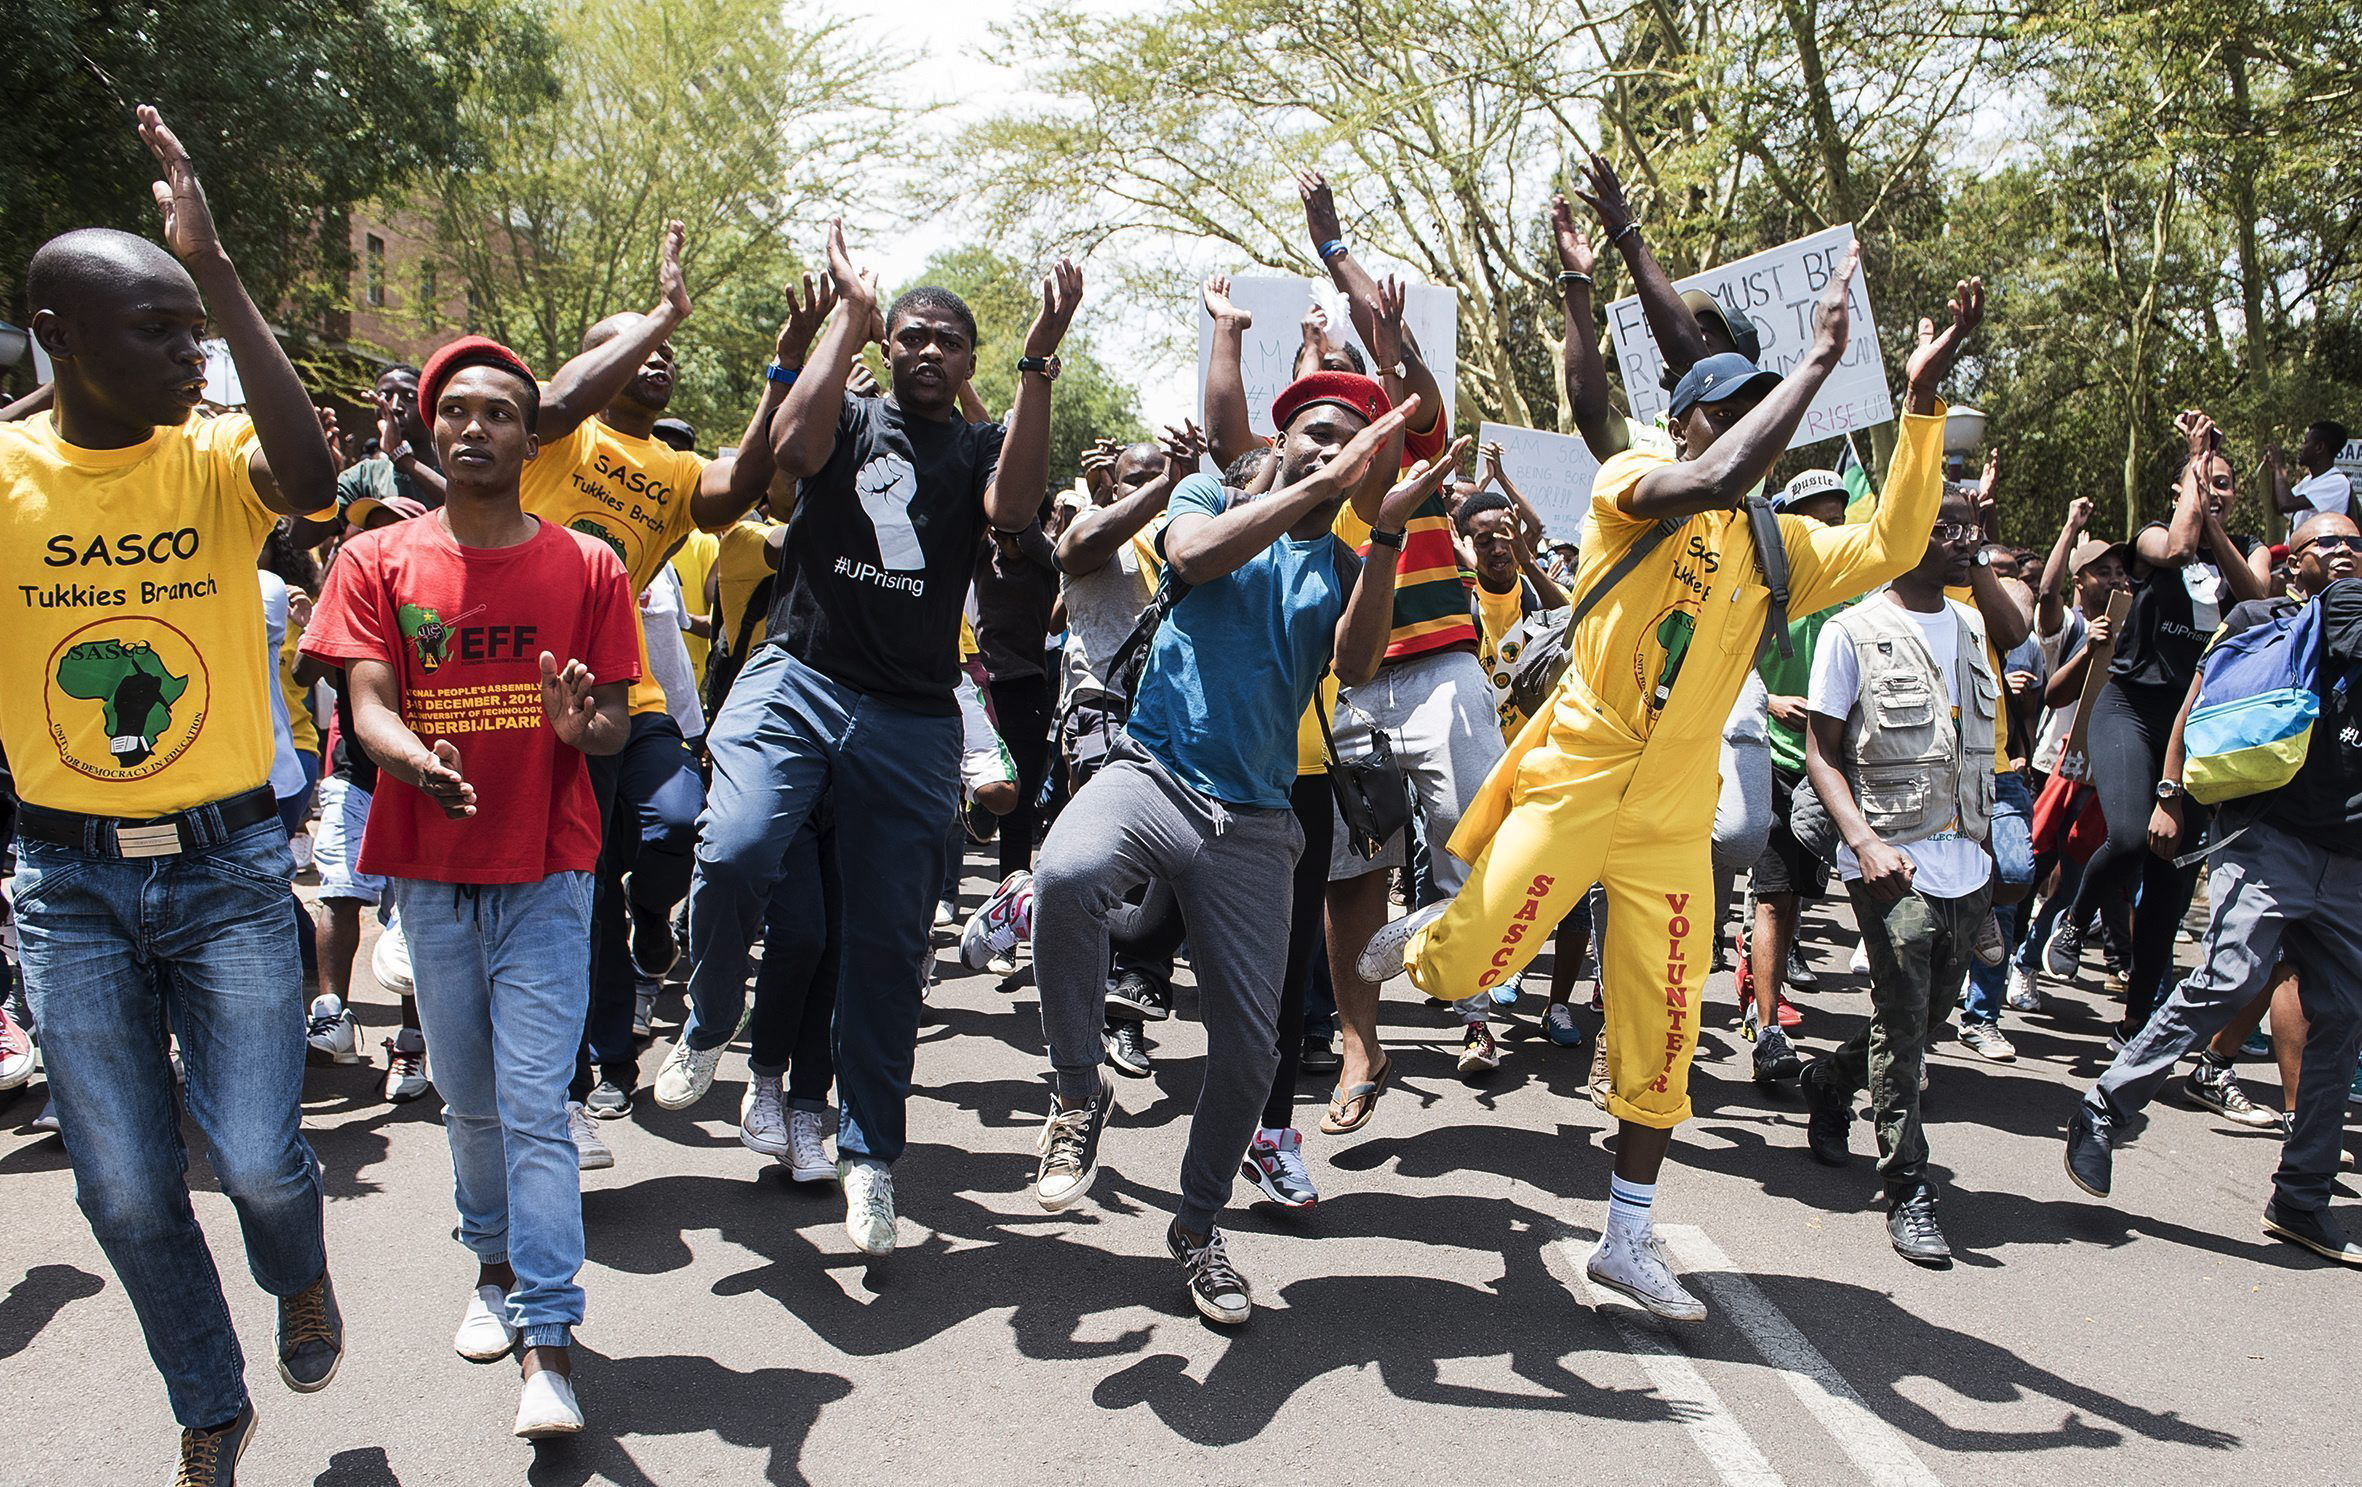 Durante las protestas, un estudiante resultó herido cuando intentaban tomar el edificio del Parlamento de Sudáfrica.